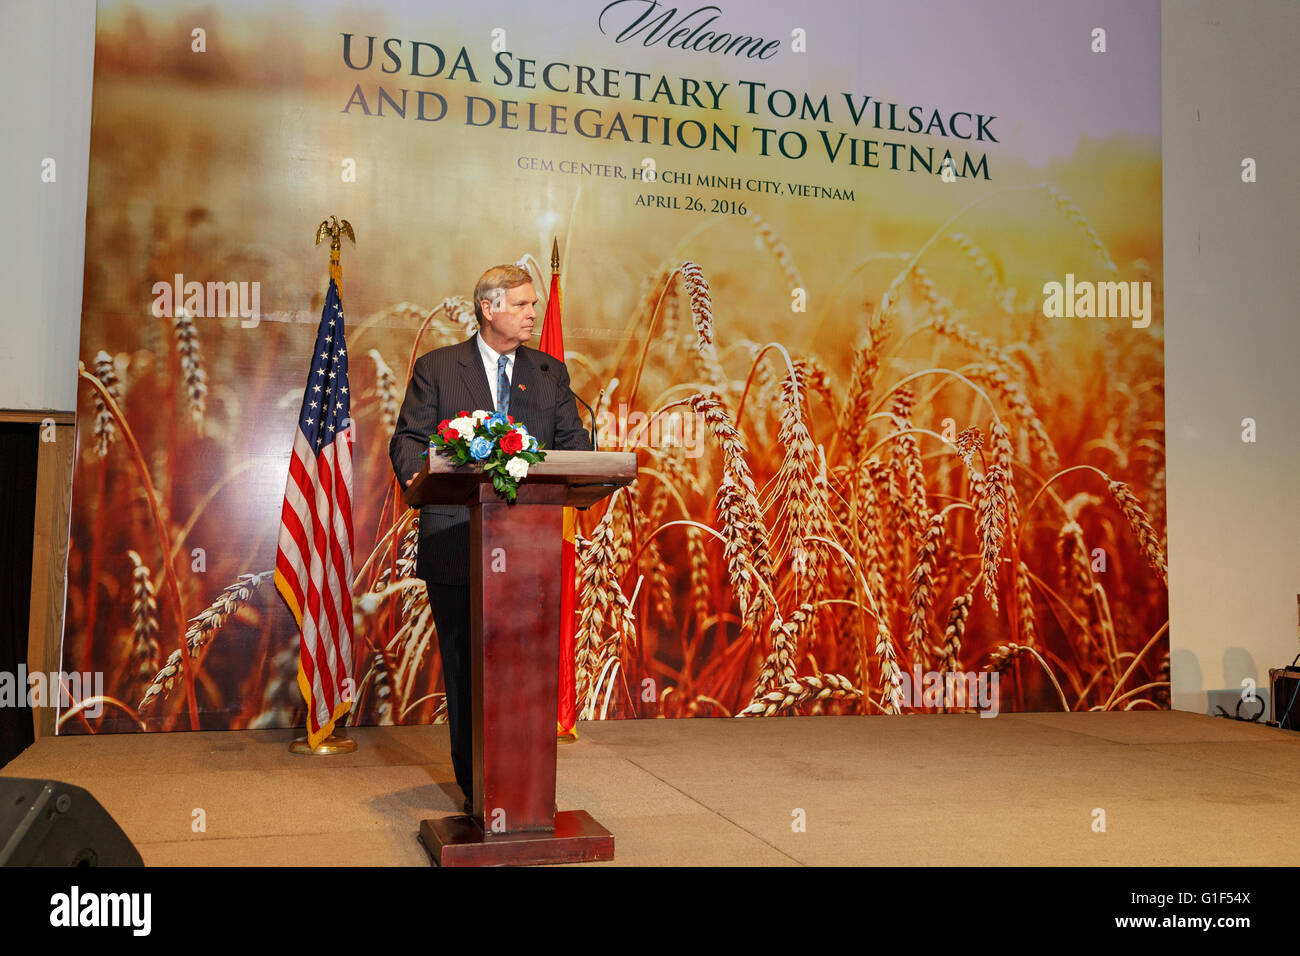 US-Landwirtschaftsminister Tom Vilsack spricht anlässlich eines Empfangs für amerikanische landwirtschaftliche Produkte 26. April 2016 in Ho-Chi-Minh-Stadt, Vietnam. Vilsack gibt in Vietnam um Details des Abkommens vorgeschlagenen Trans-Pacific Partnership zu besprechen. Stockfoto